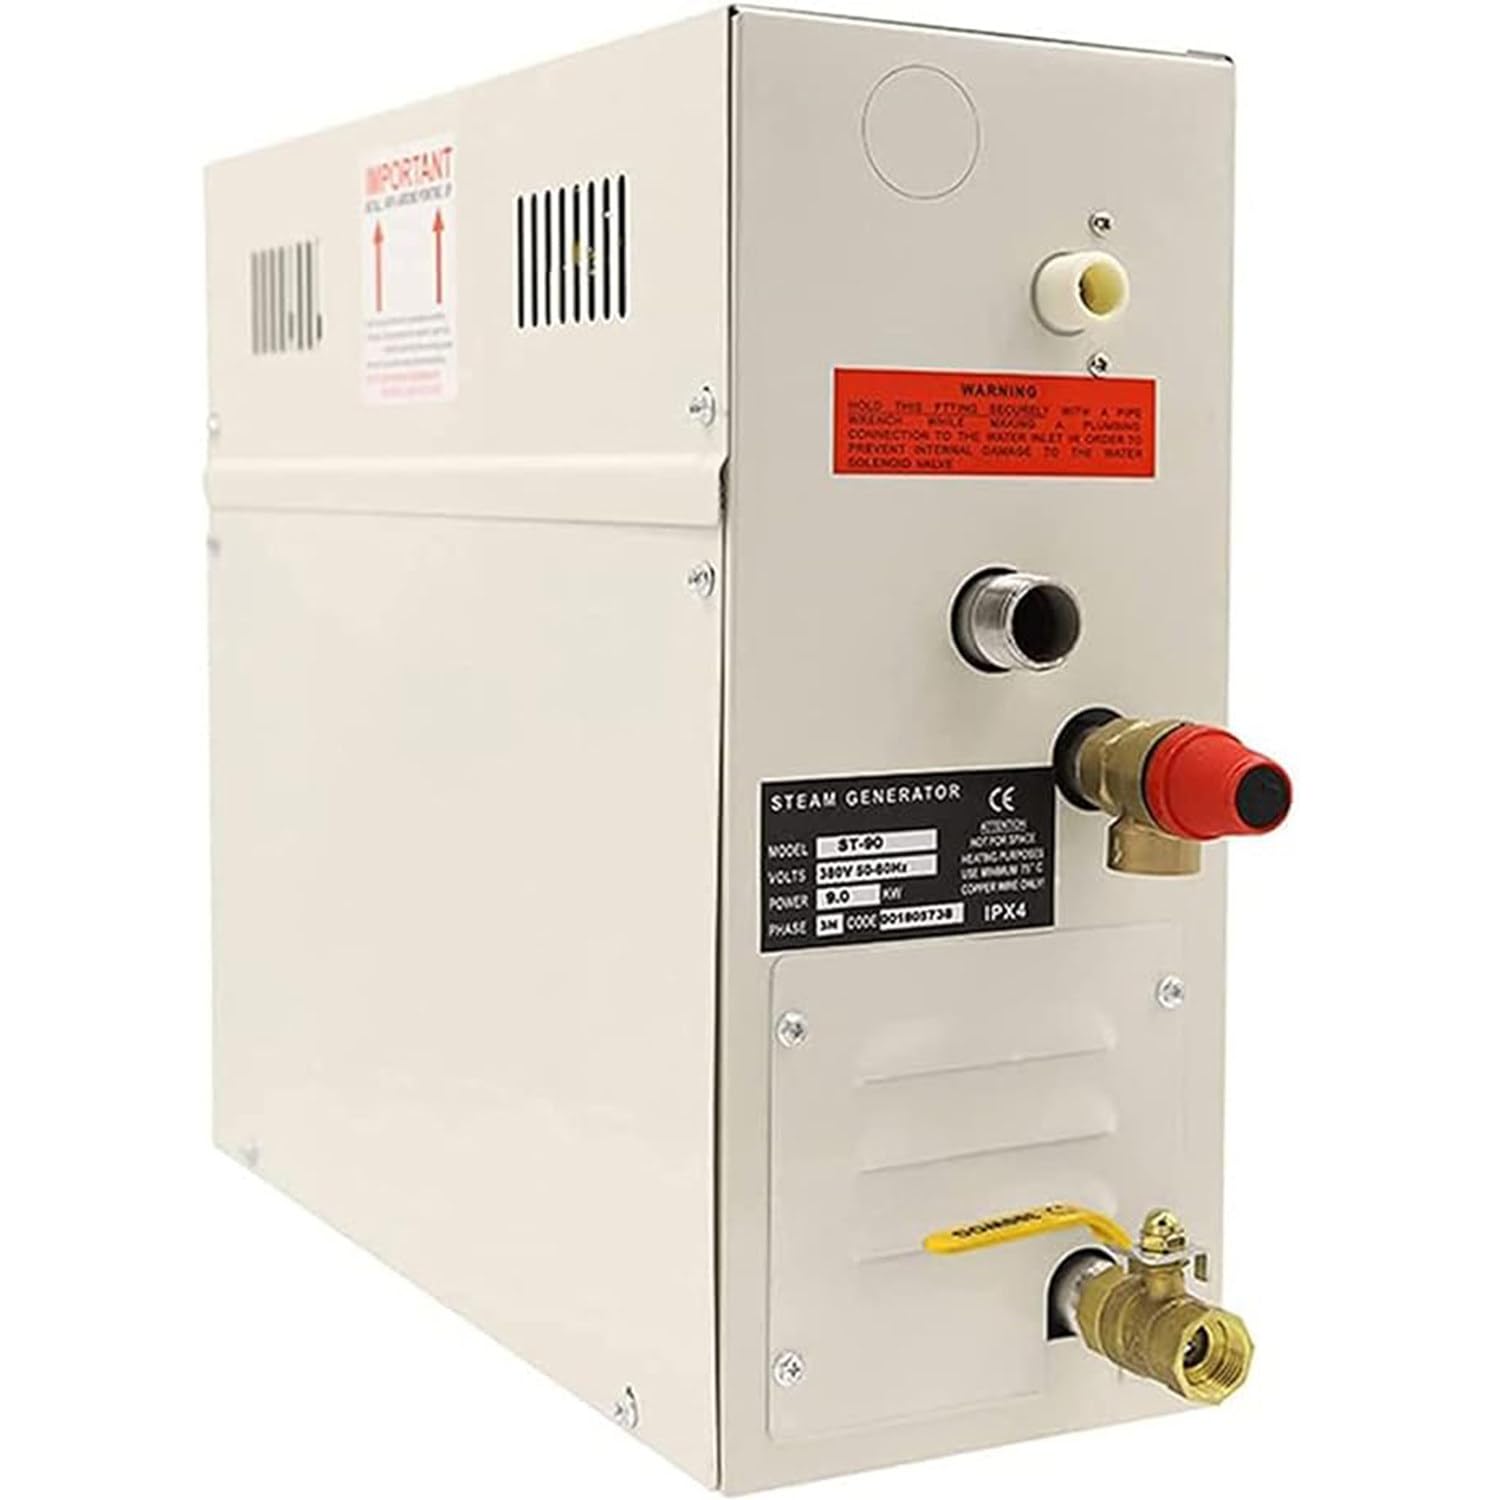 Dampfdusche Generator Kit Selbstentleerung System, LED Waterproof Controller für Haus kommerziellen Einsatz für Bad Sauna SPA,9KW